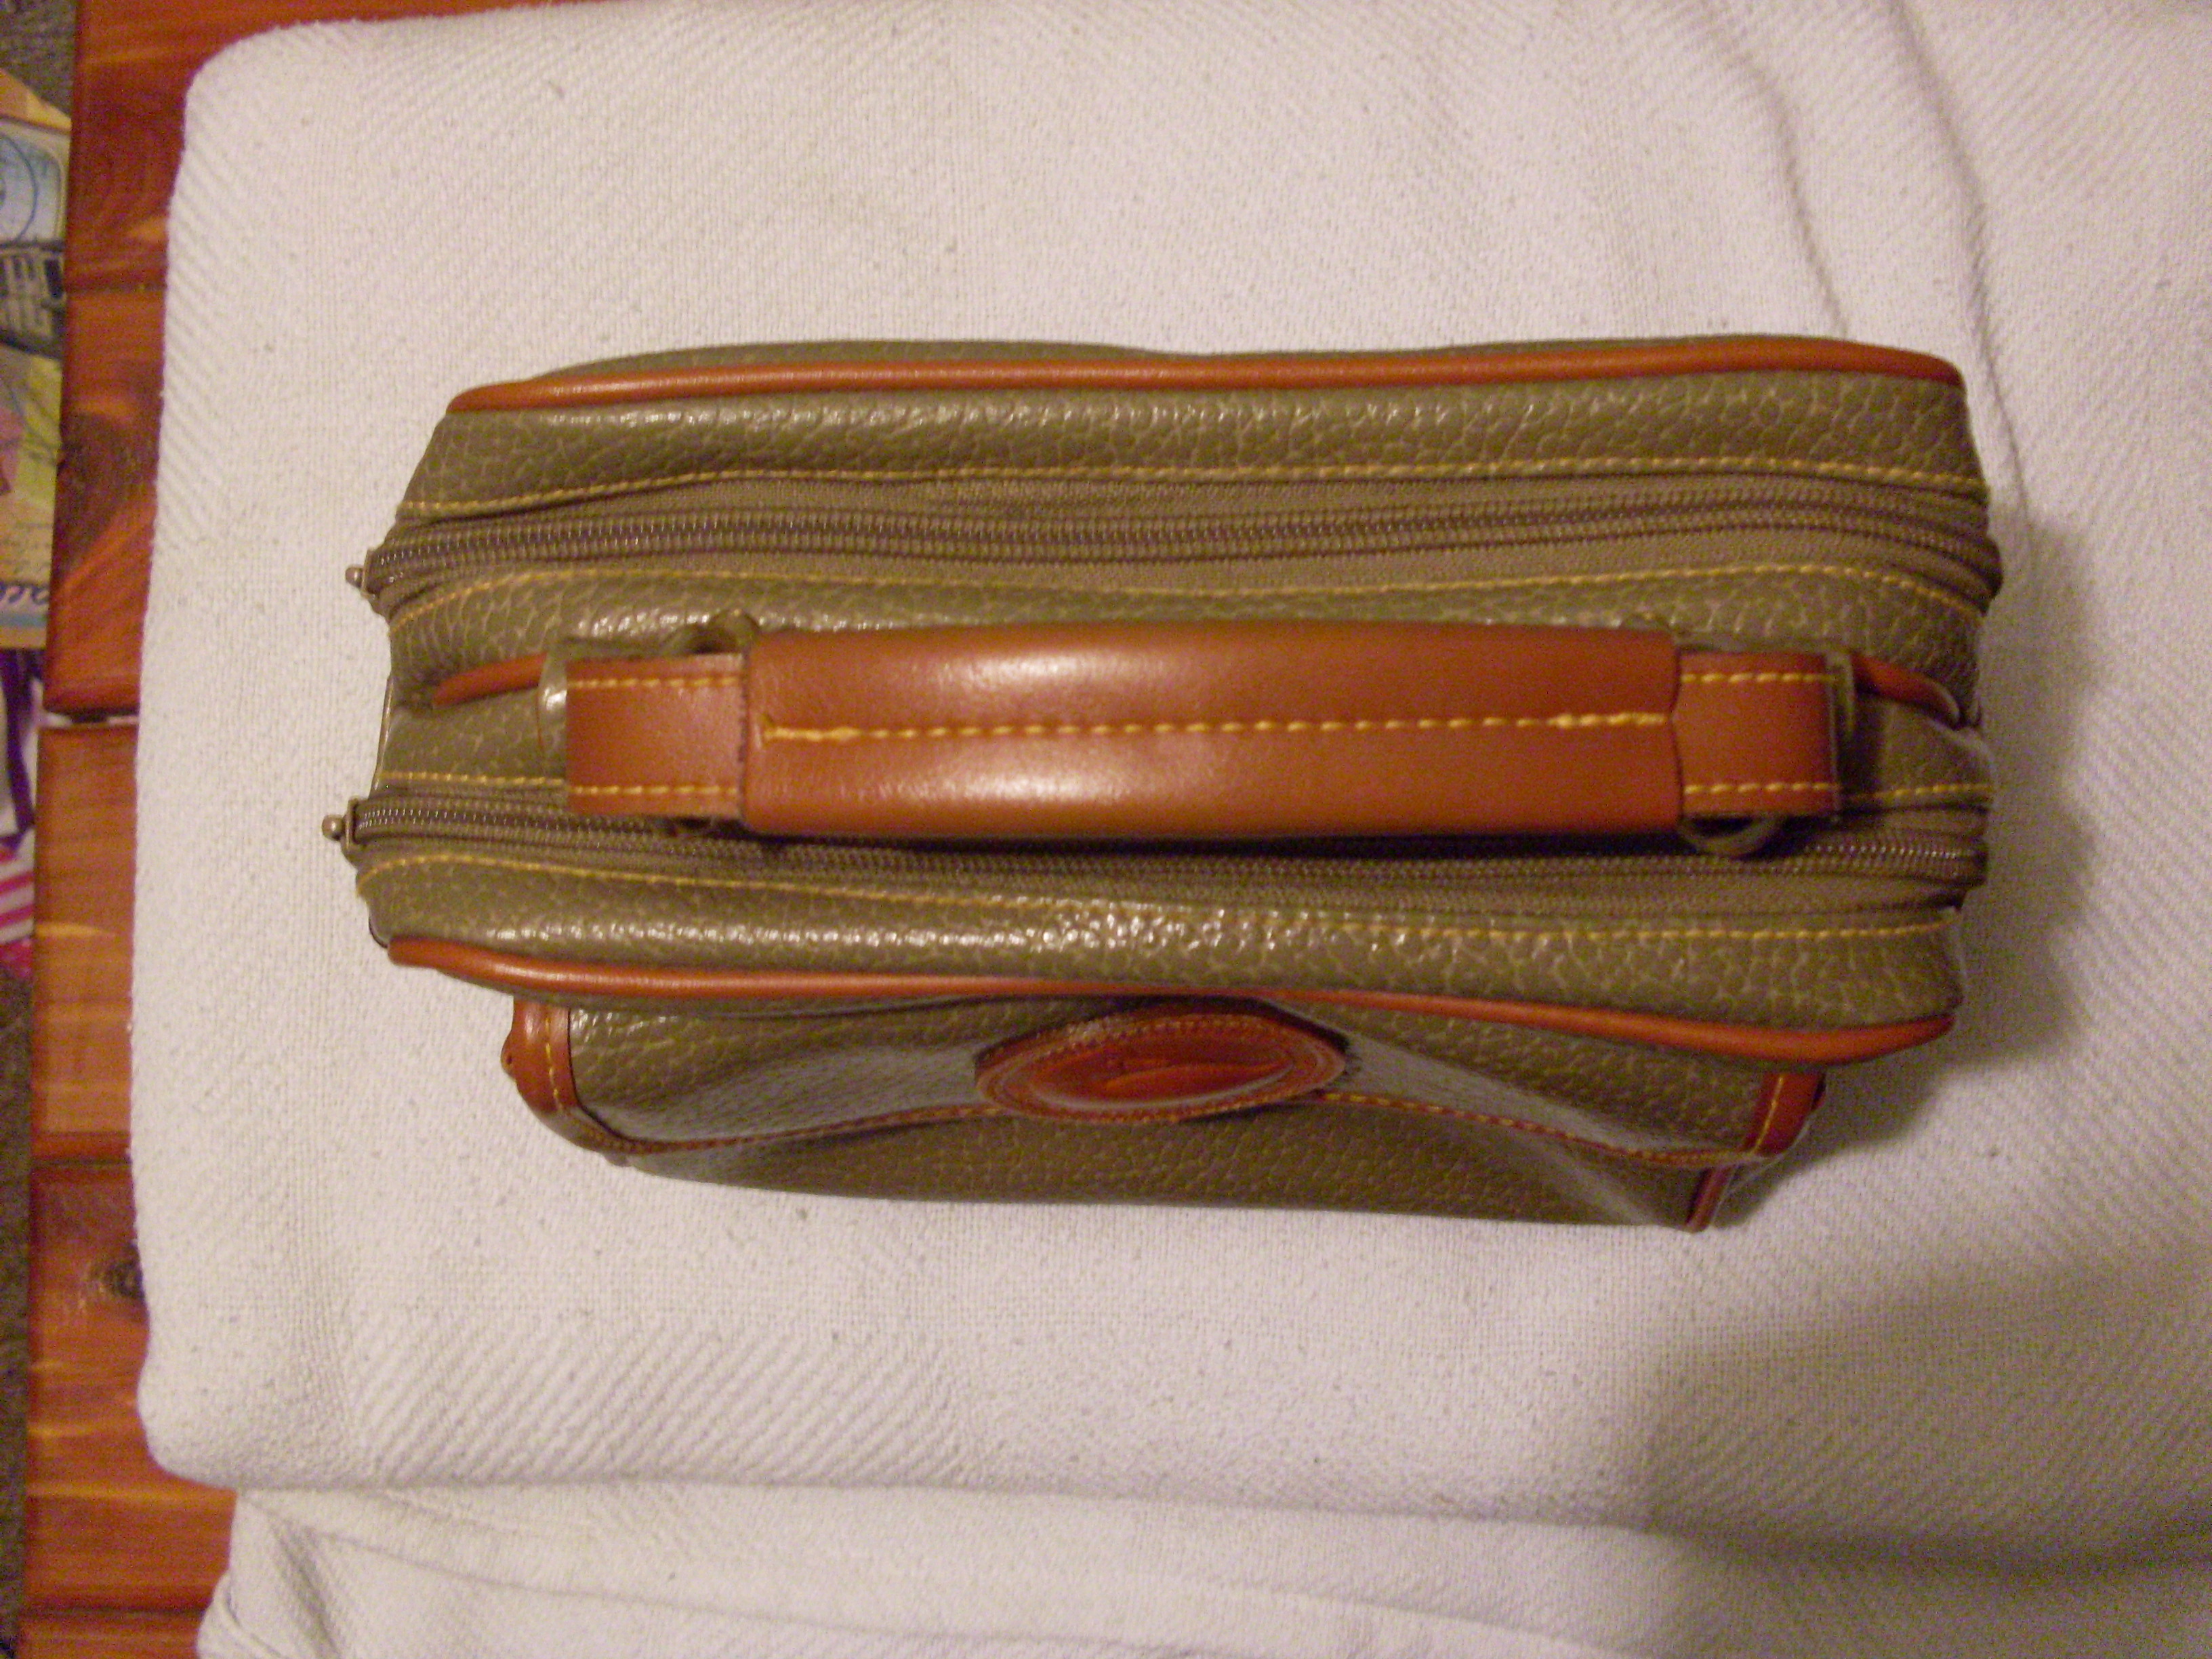 I Bought A Fake Vintage Dooney & Bourke Bag - Accidental Reseller Purchase  